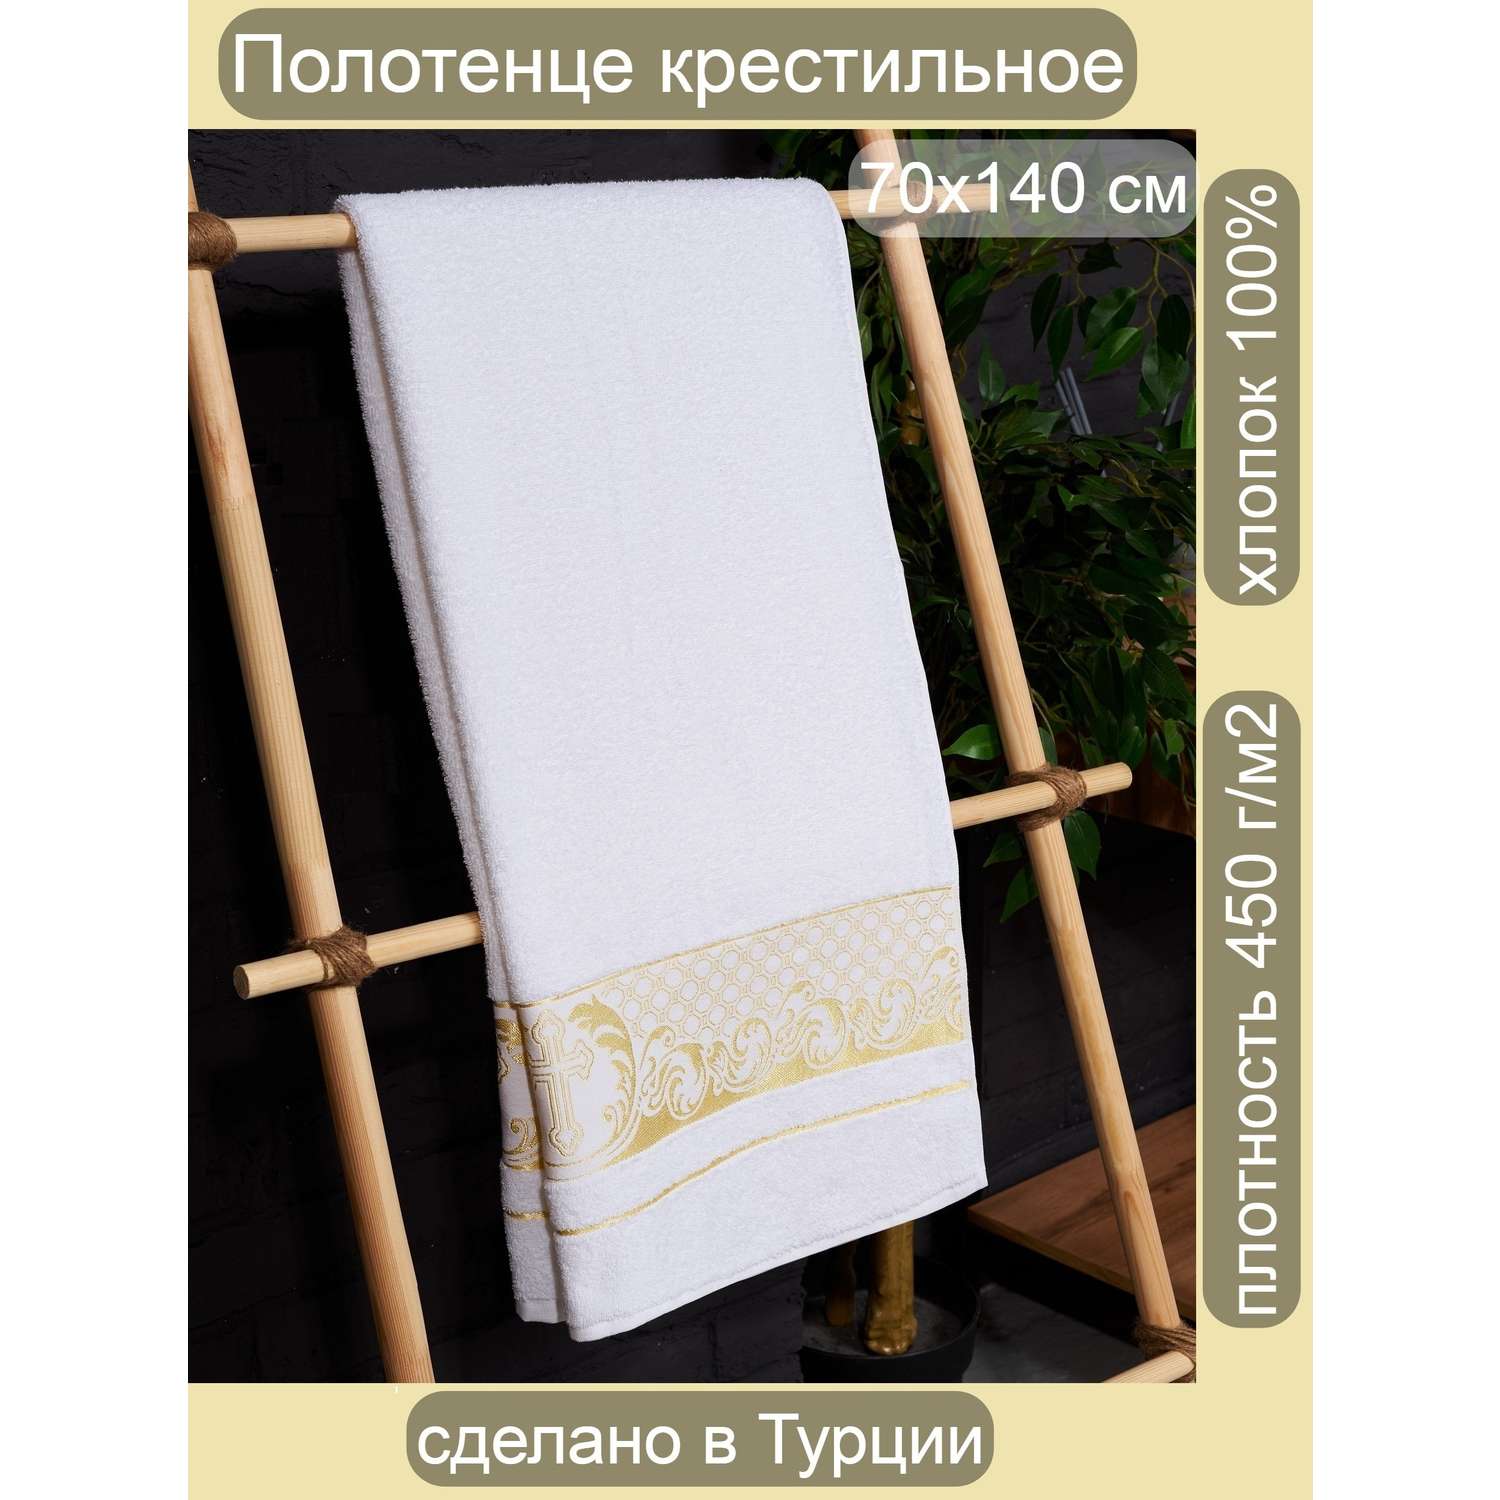 Полотенце Крестильное ATLASPLUS 70х140 см белый золотистый - фото 1